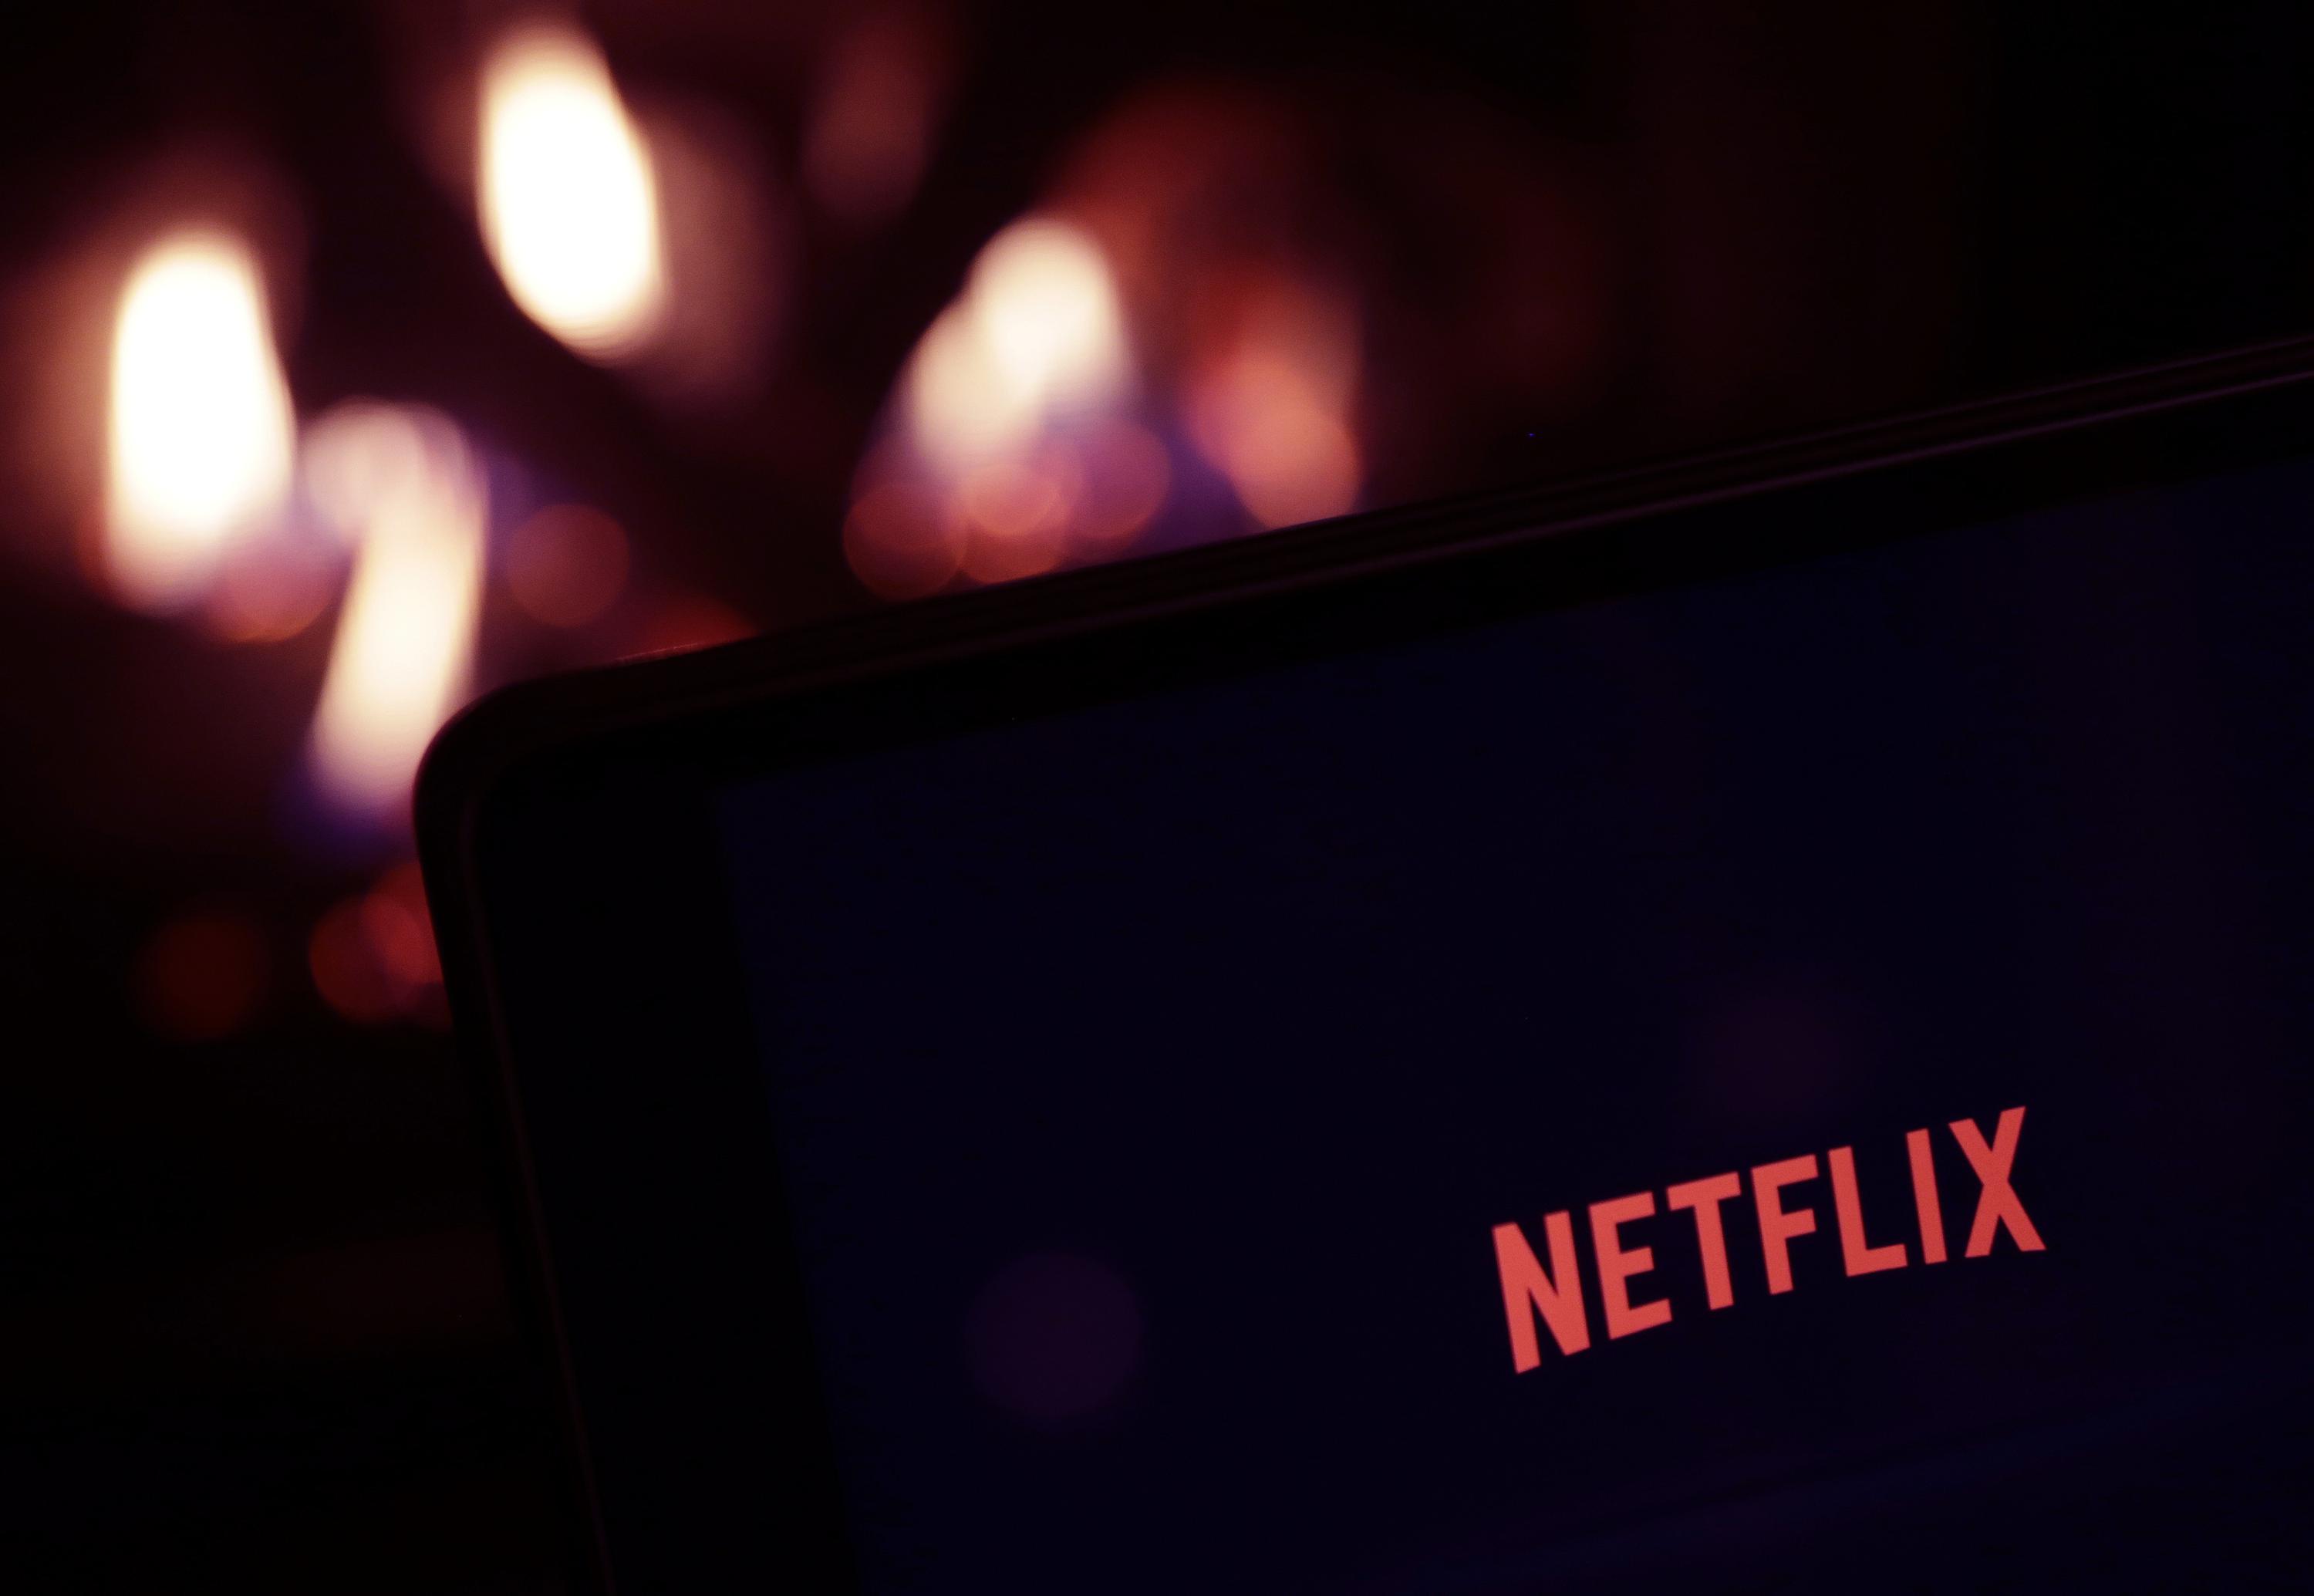 دول الخليج العربية تحث Netflix على إزالة مقاطع الفيديو “المسيئة”